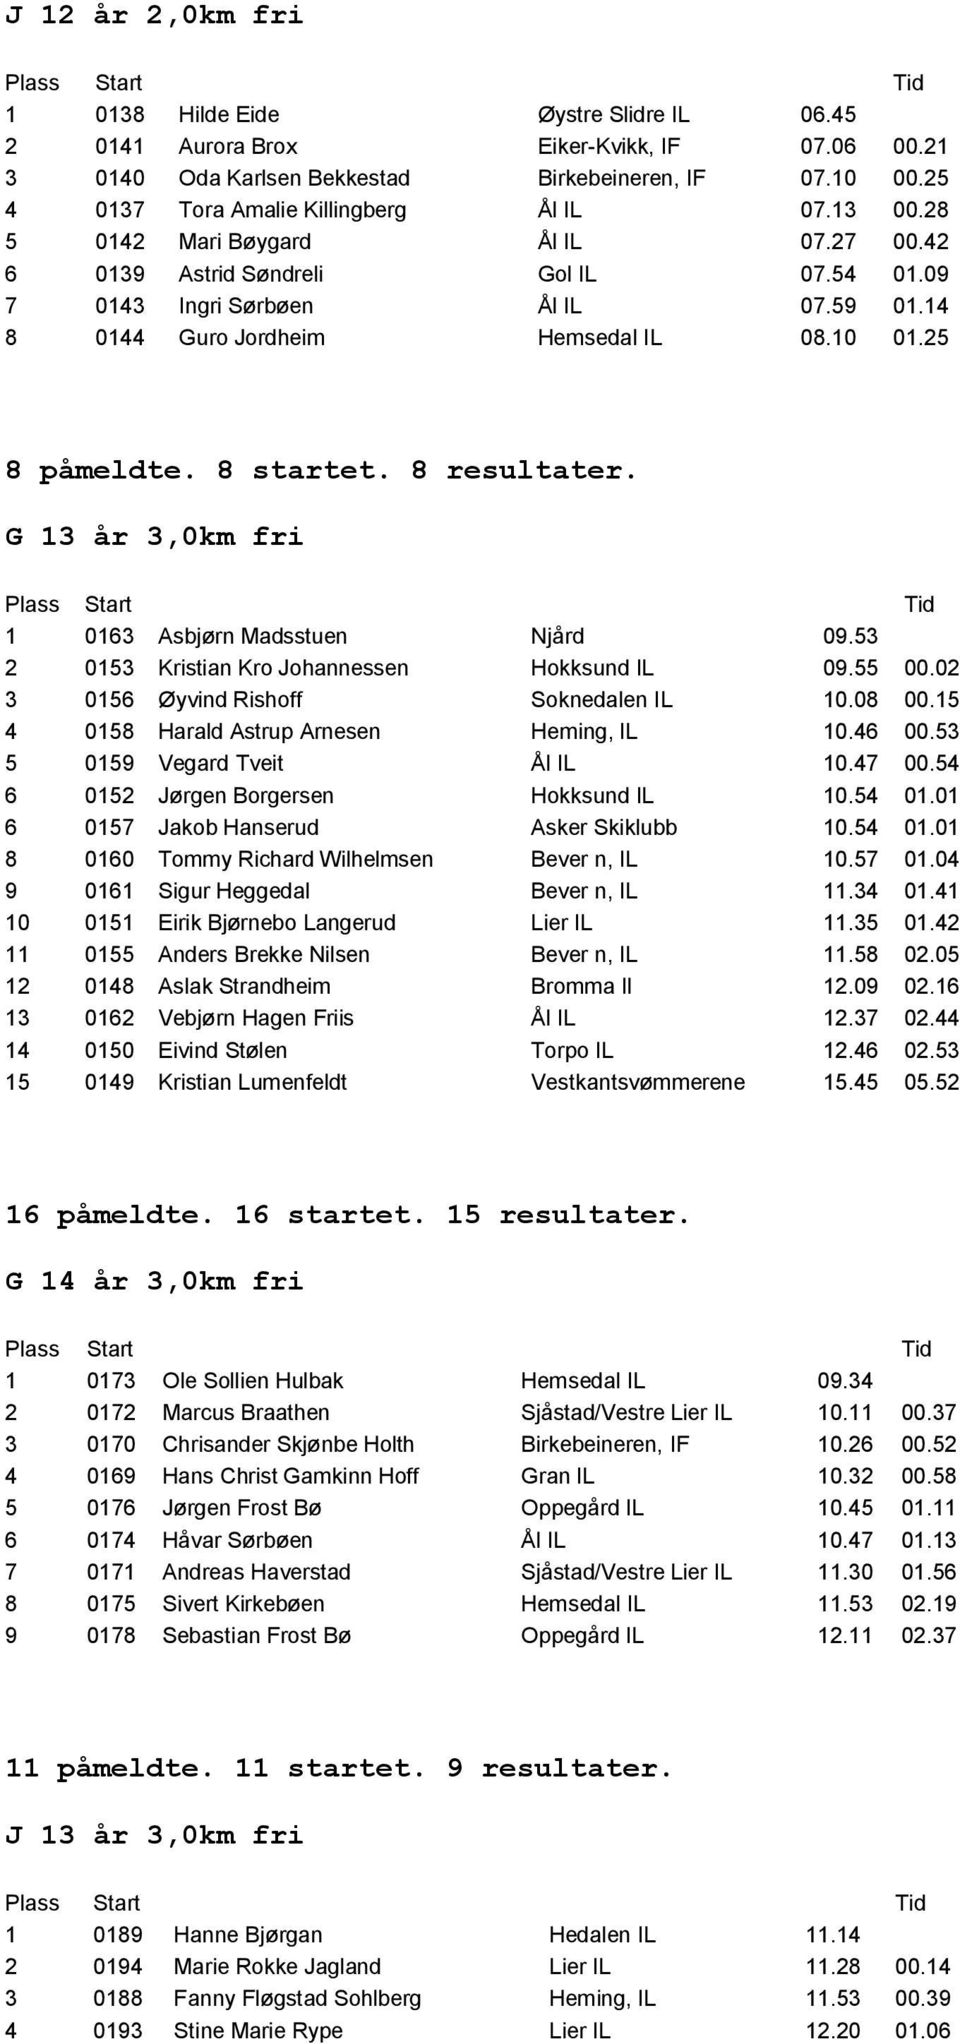 14 8 0144 Guro Jordheim Hemsedal IL 08.10 01.25 8 påmeldte. 8 startet. 8 resultater. G 13 år 3,0km fri 1 0163 Asbjørn Madsstuen Njård 09.53 2 0153 Kristian Kro Johannessen Hokksund IL 09.55 00.